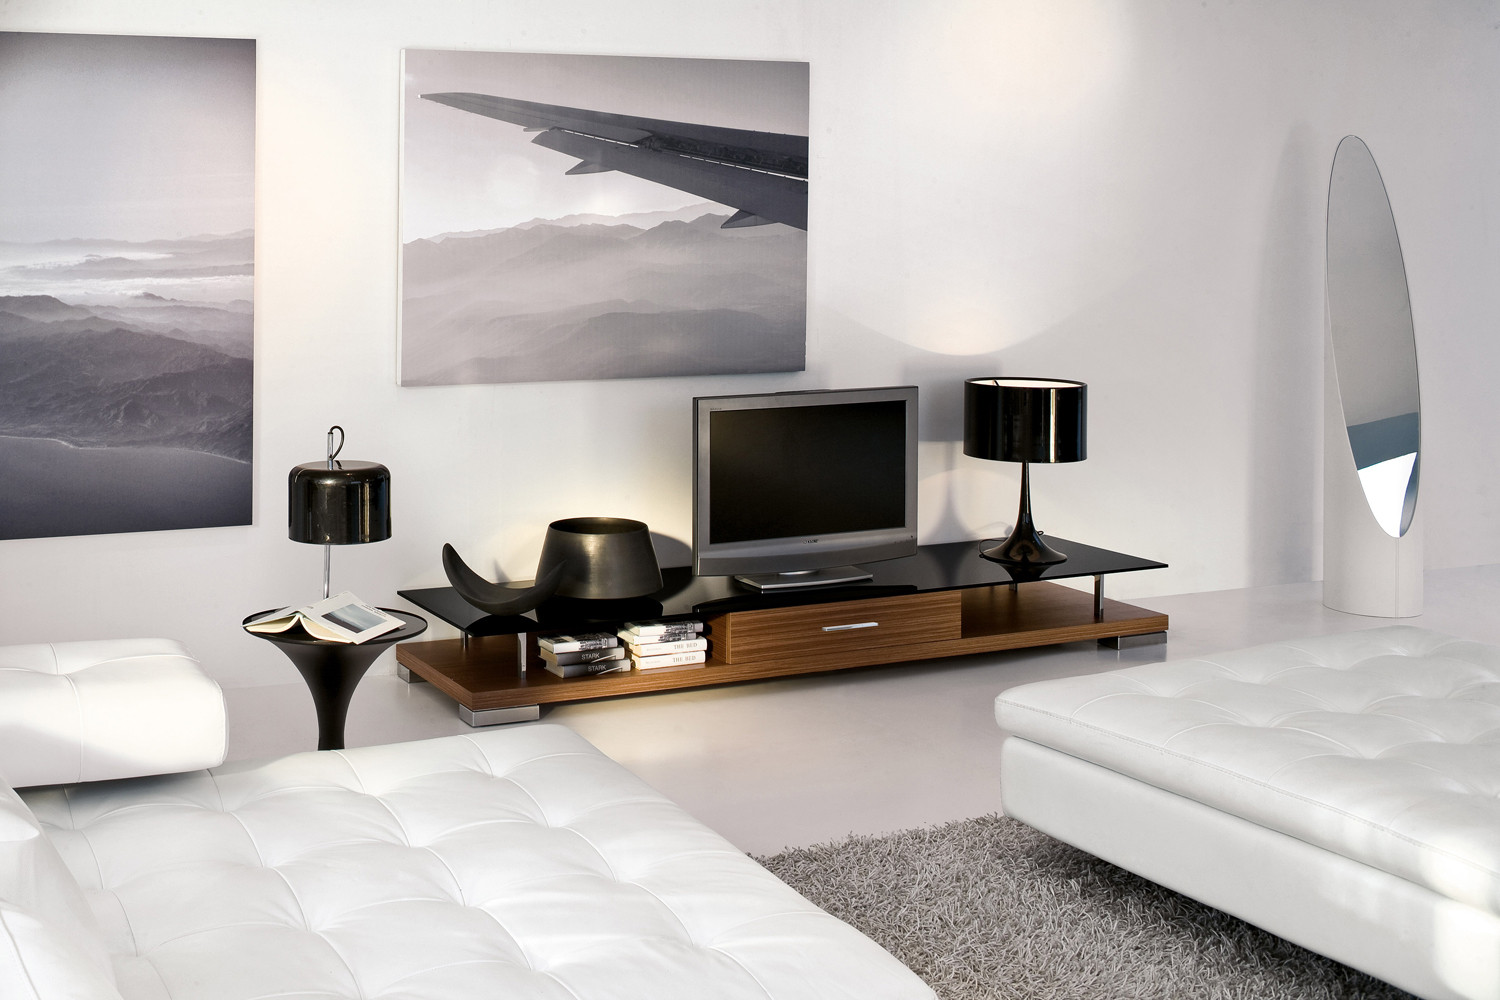 gambar desain interior minimalis: desain ruang tamu ...